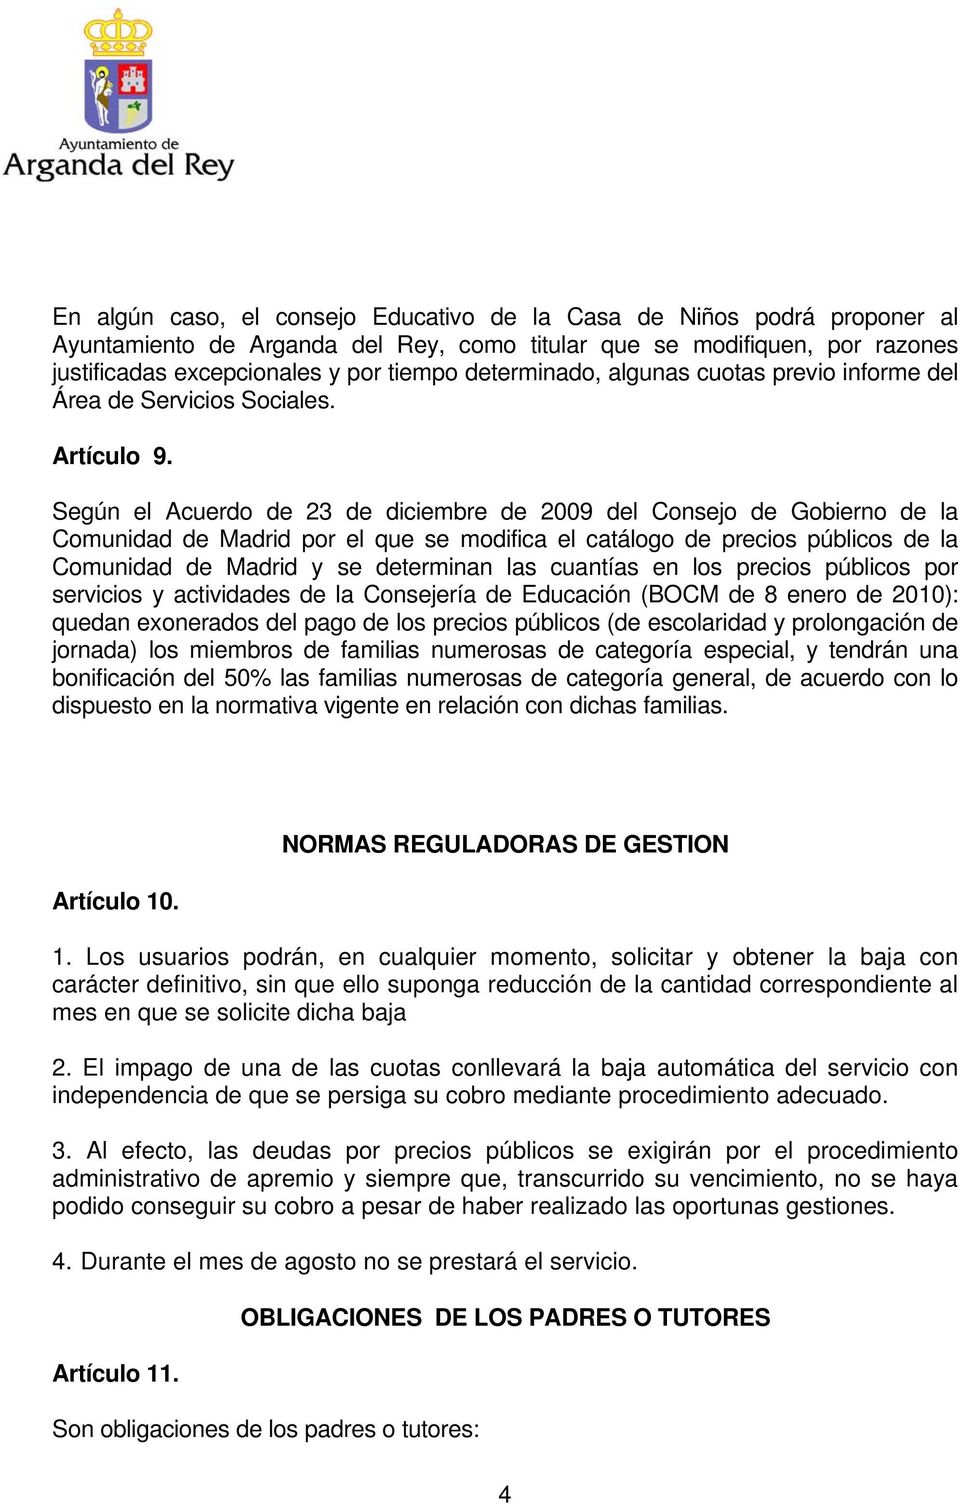 Según el Acuerdo de 23 de diciembre de 2009 del Consejo de Gobierno de la Comunidad de Madrid por el que se modifica el catálogo de precios públicos de la Comunidad de Madrid y se determinan las